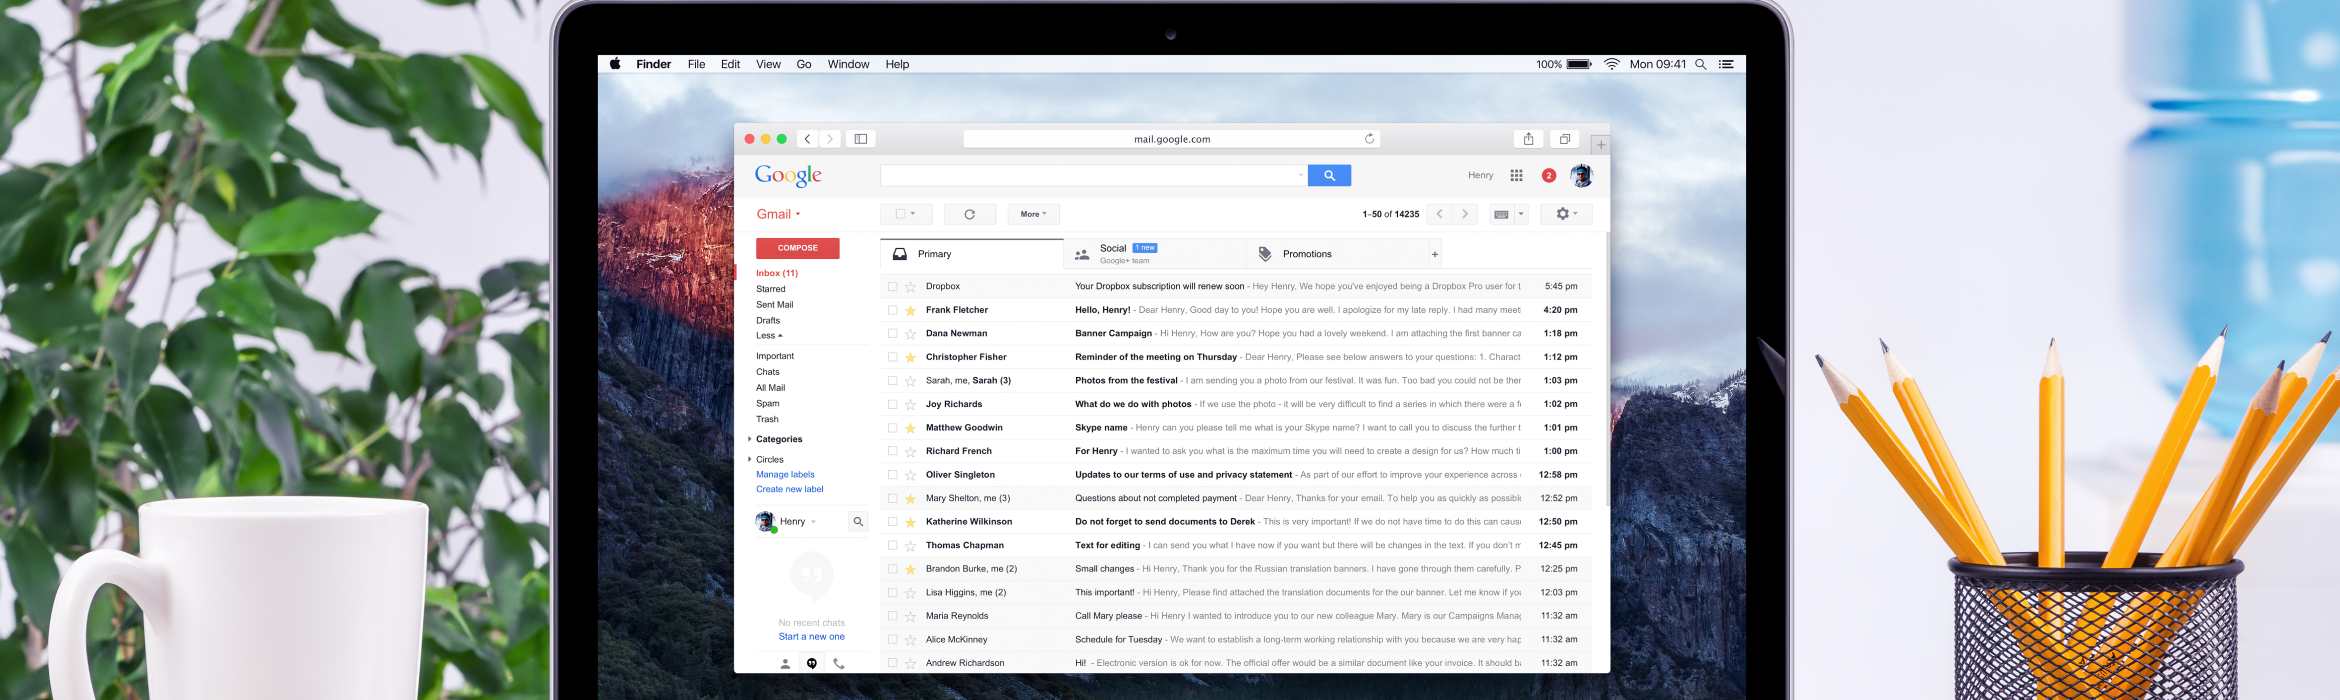 Gmail op laptop bij artikel met tips